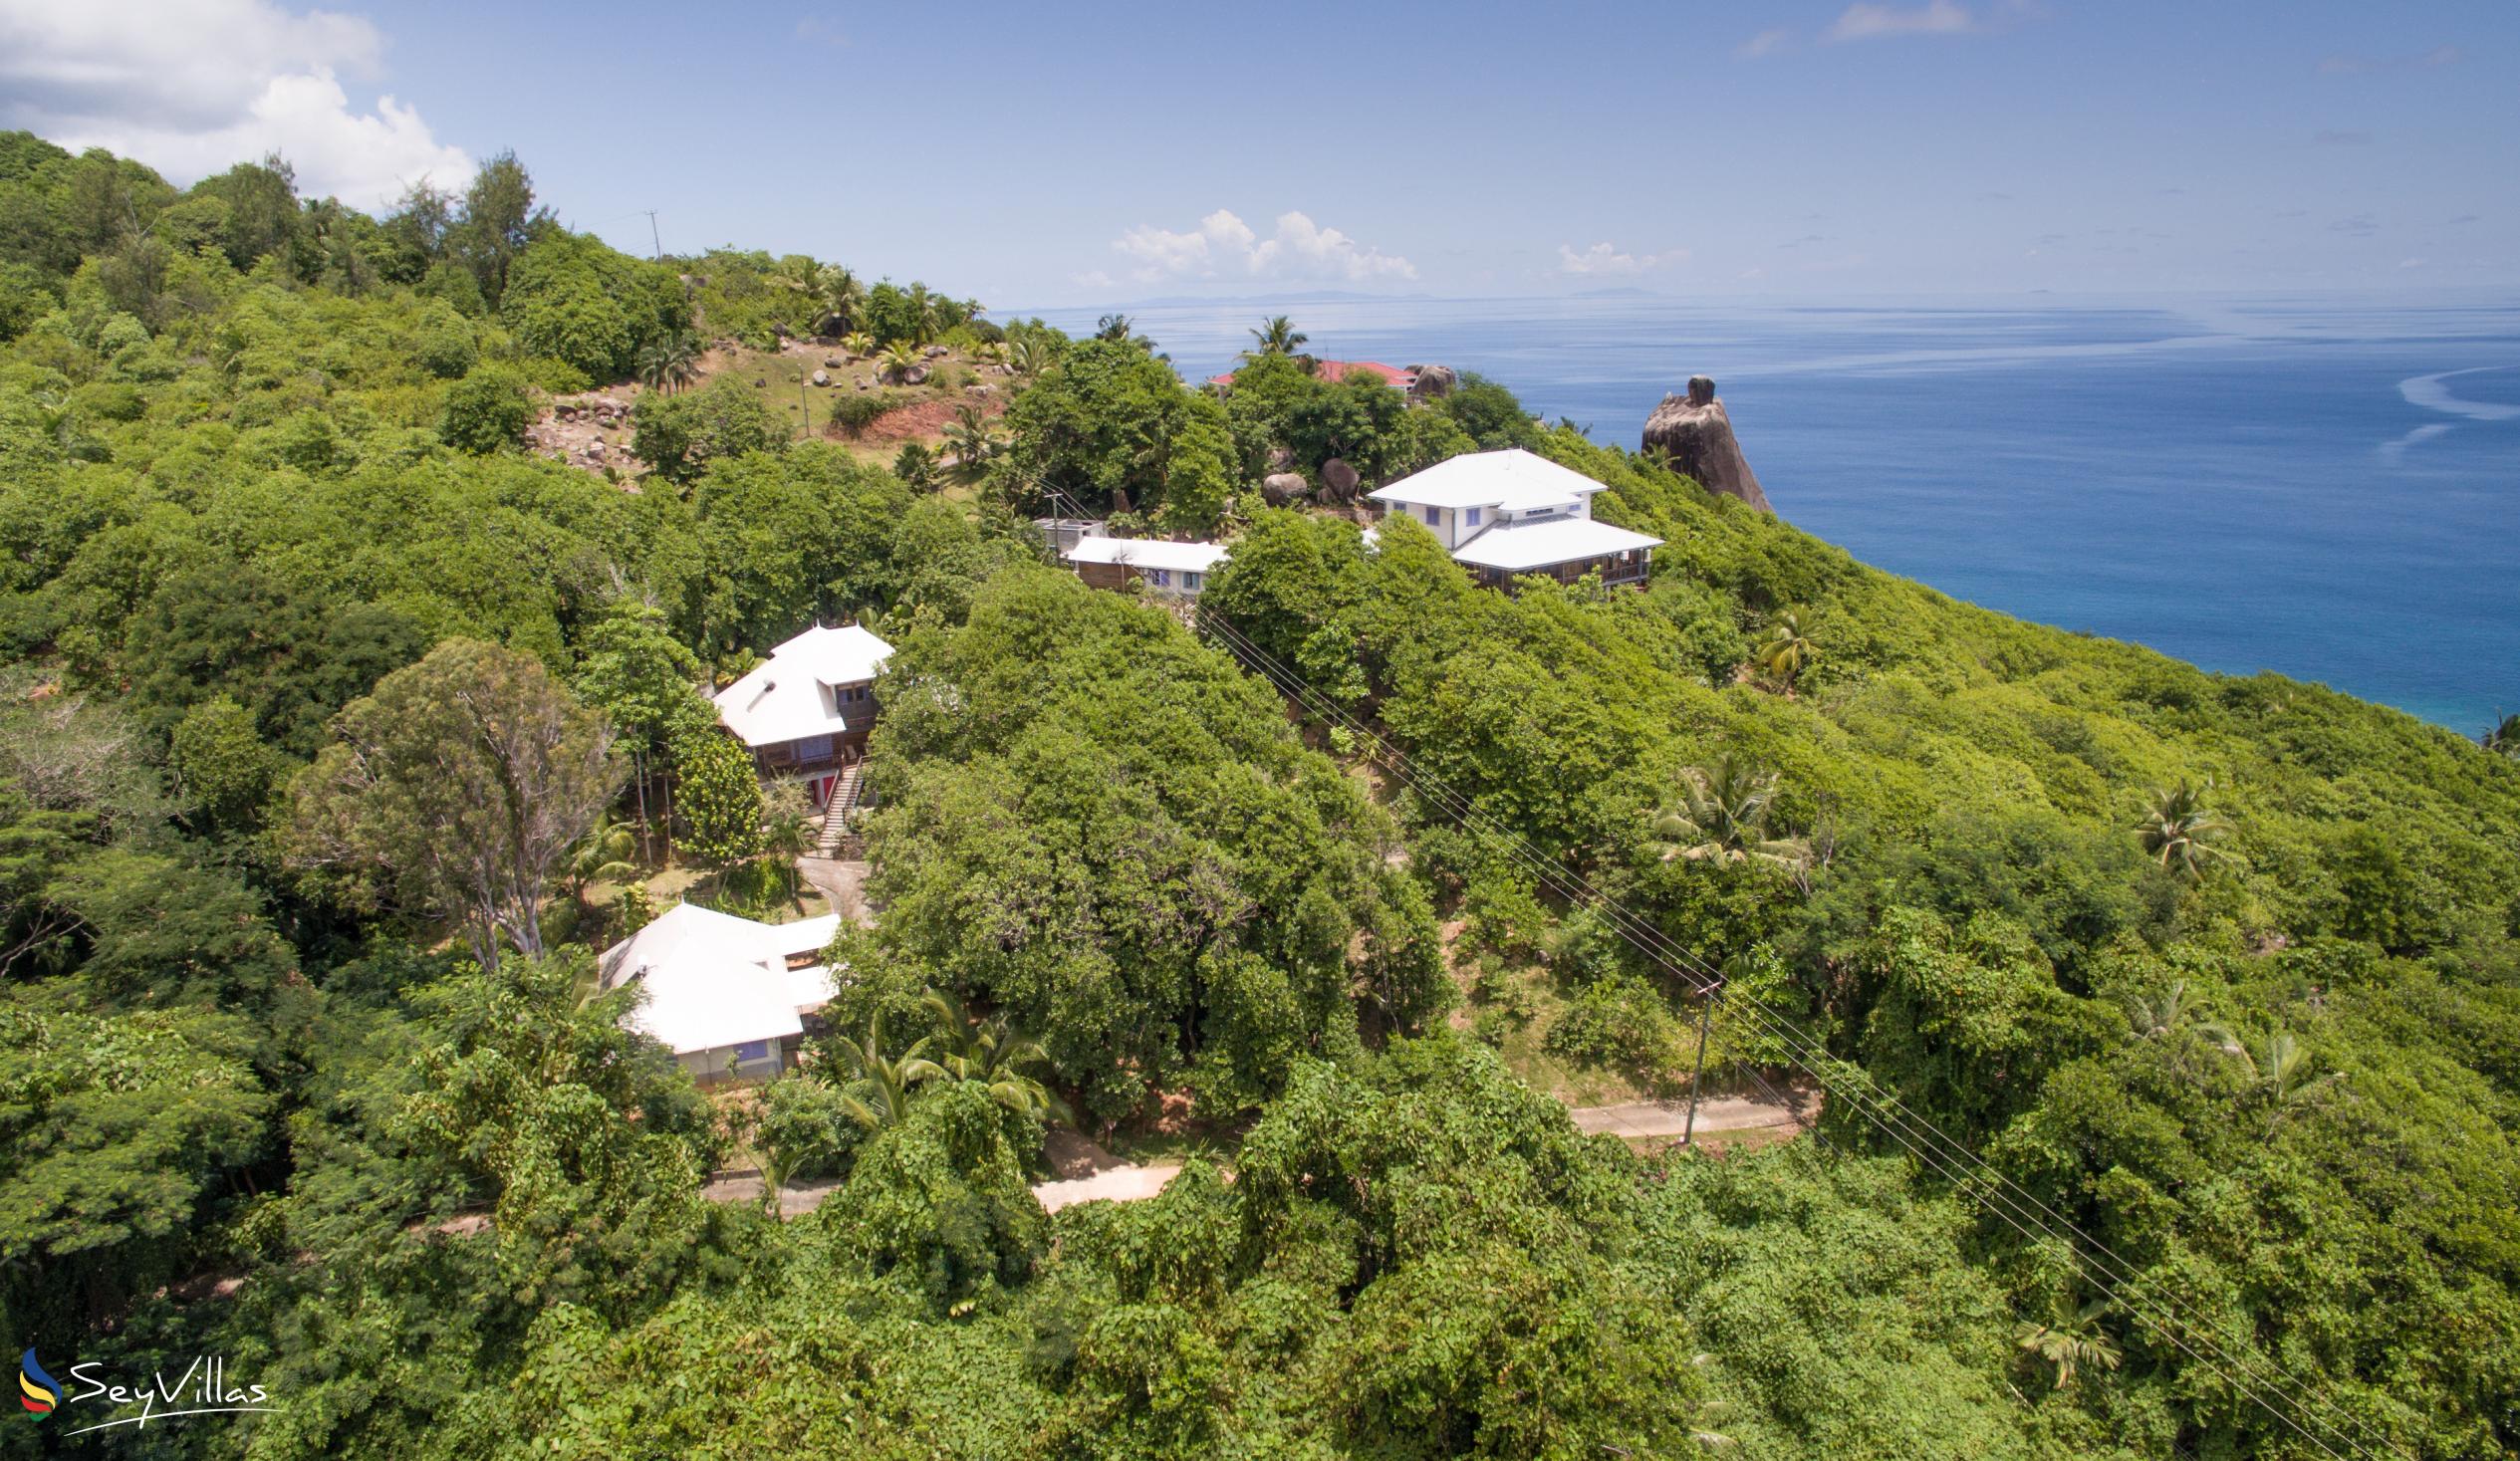 Foto 8: Demeure de Cap Maçon - Aussenbereich - Mahé (Seychellen)